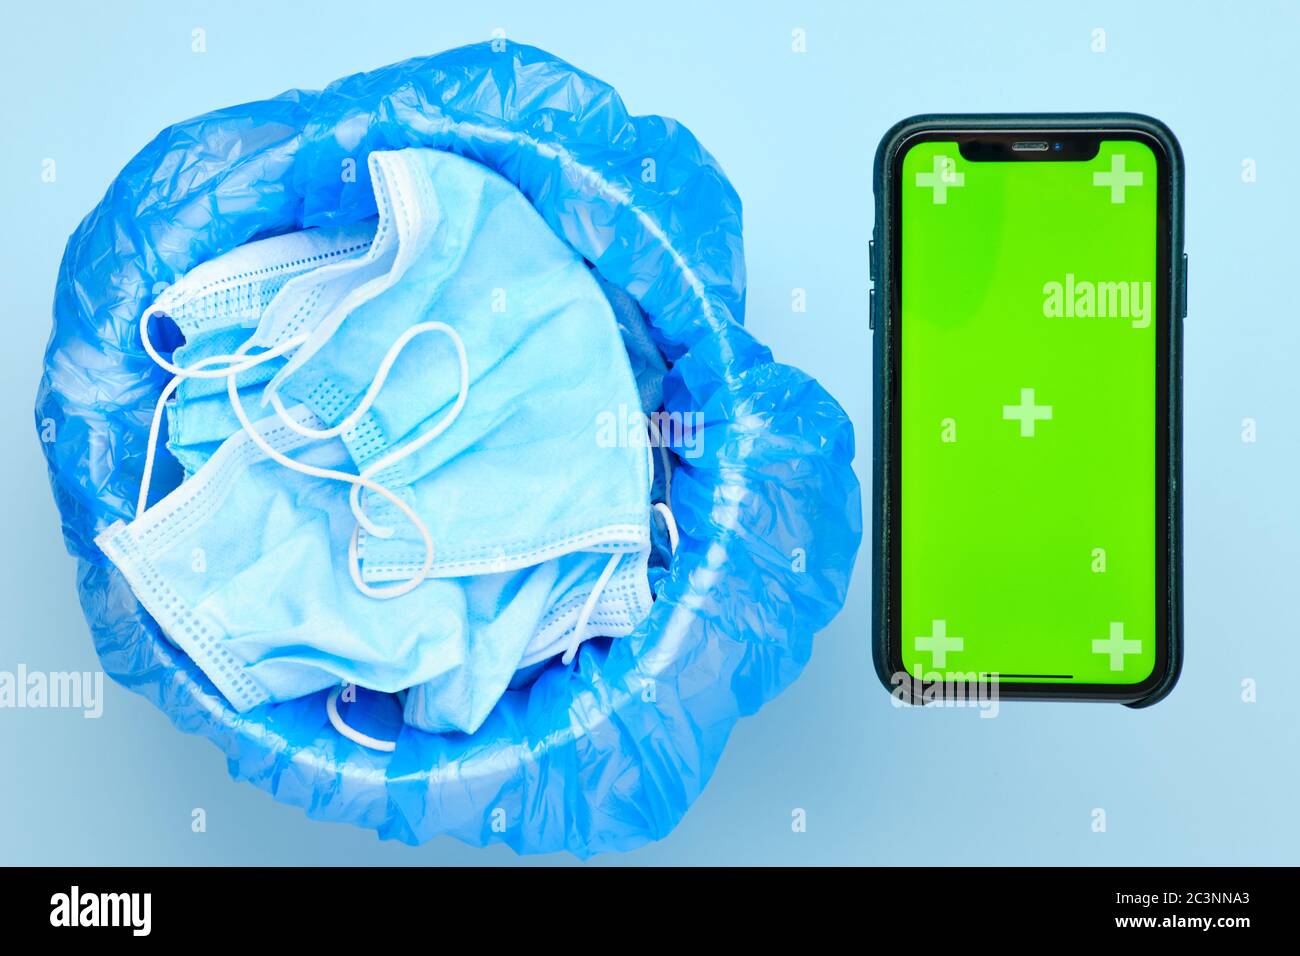 Einweg-OP-Maske in einem Papierkorb und Smartphone mit Chroma-Taste auf blauem Hintergrund. Anwendung des Smart Quarantäne-Konzepts. Stockfoto